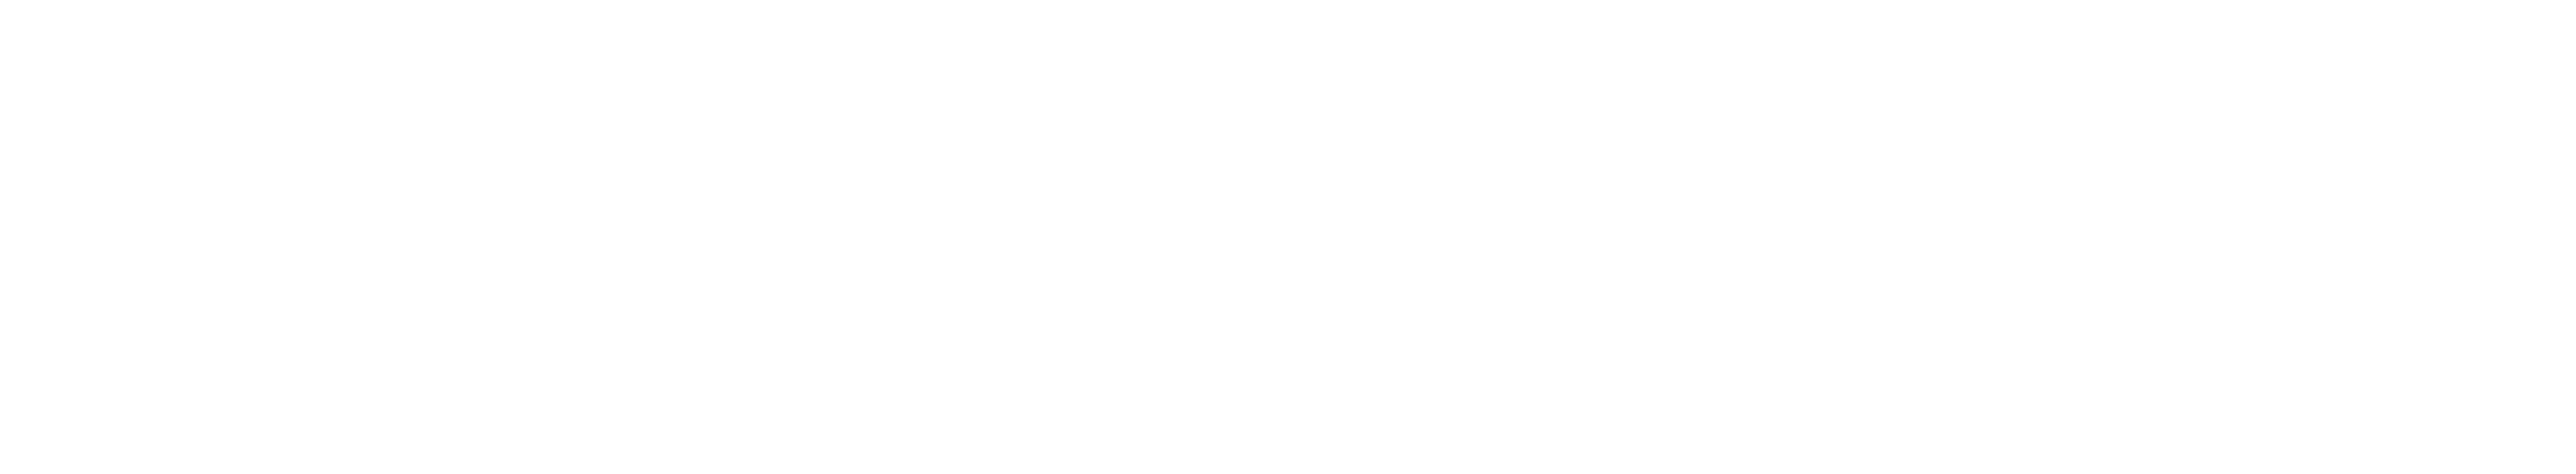 MCC title logo